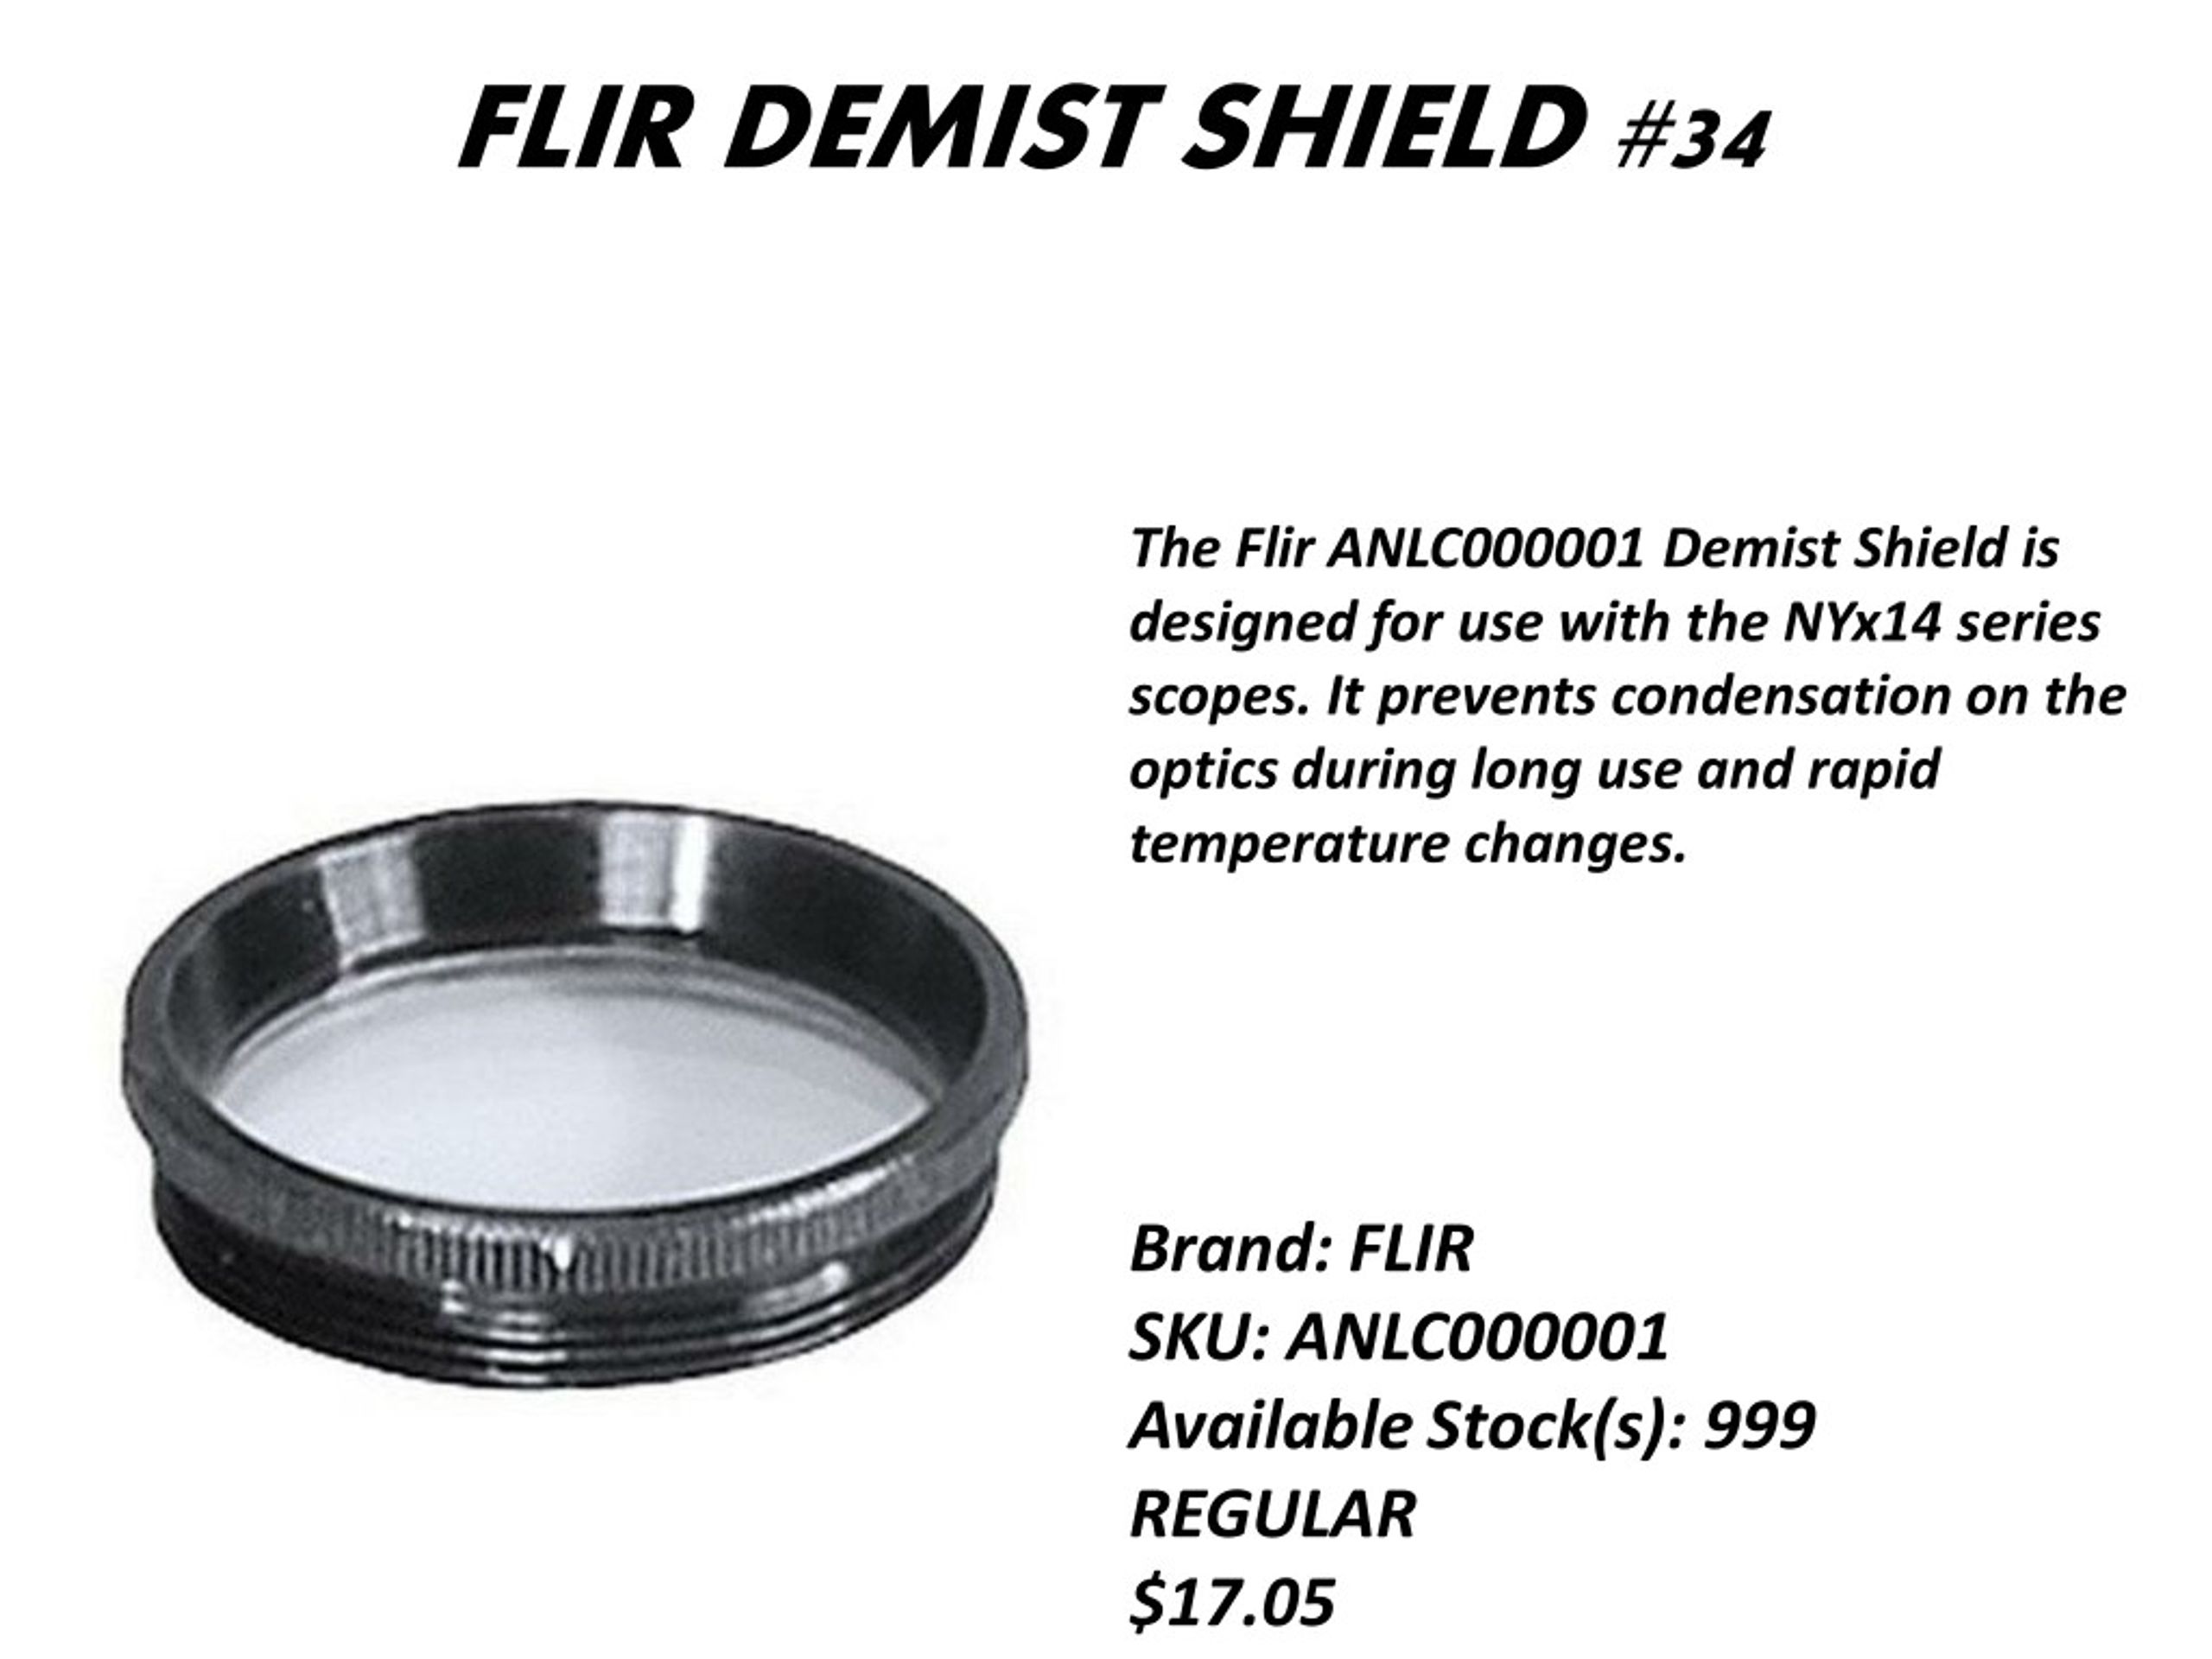 PS Series D2 4127306 Thermal Imaging Accessory Flir Lens Cap